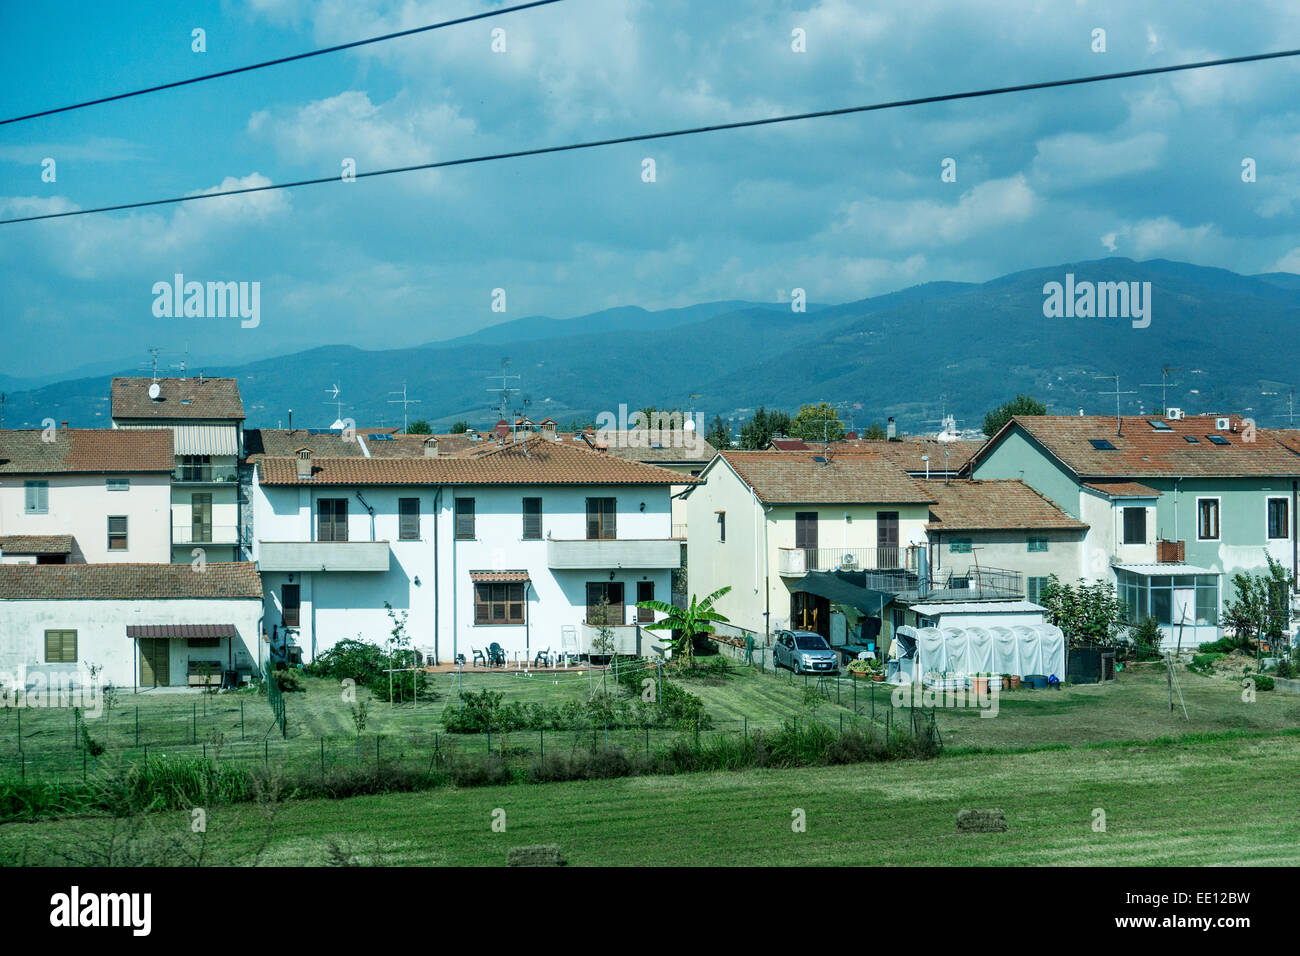 De jolies maisons avec des toits de tuiles rouges et le mode de vie du pays d'empiéter sur les champs cultivés les terres agricoles en dehors du centre de Florence Italie Banque D'Images